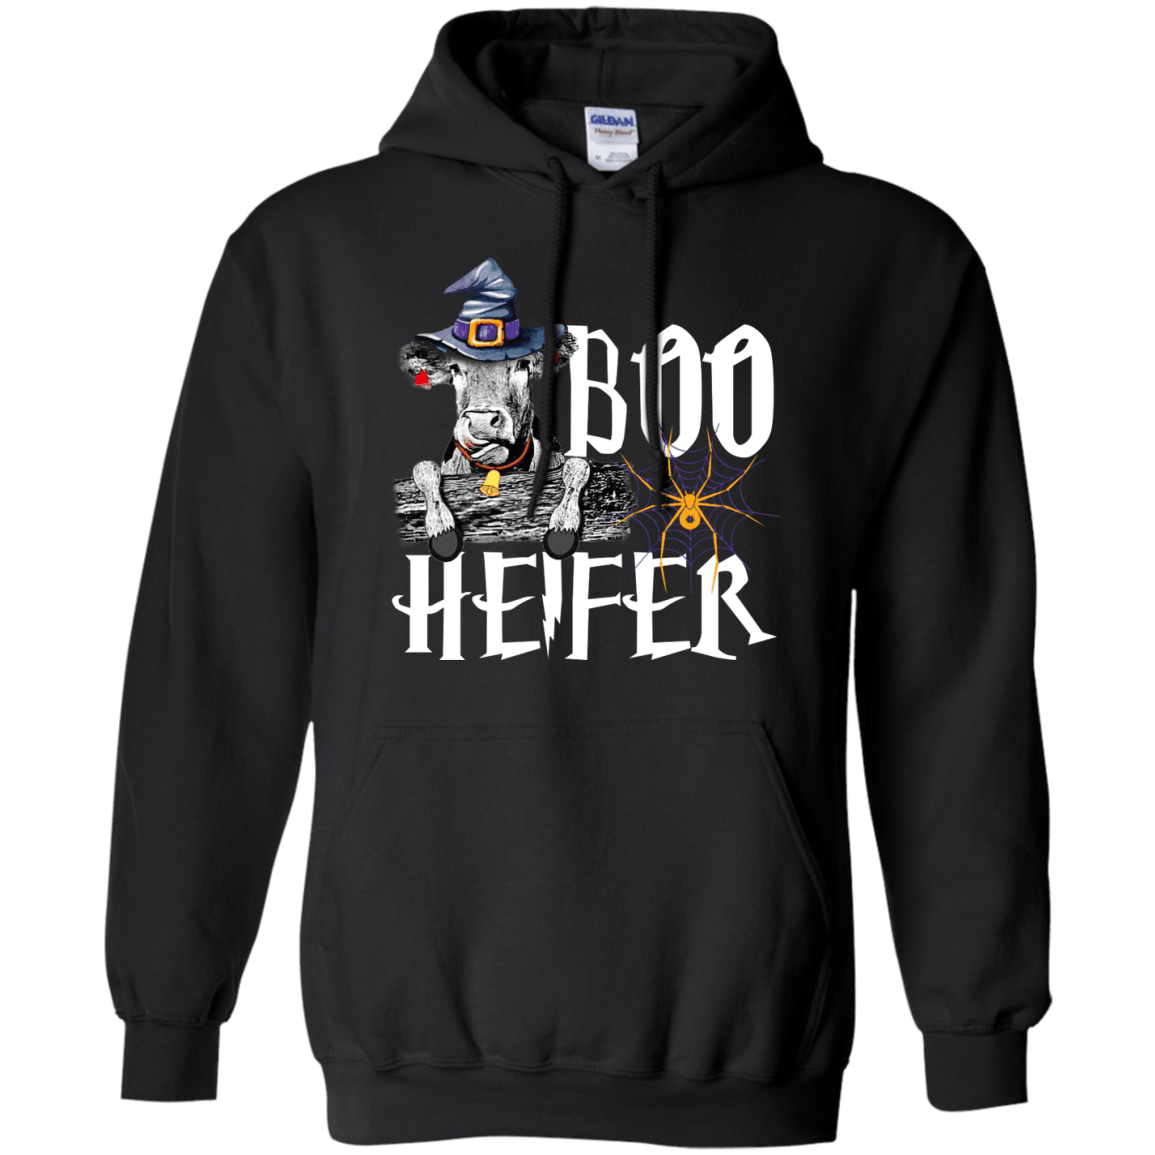 Boo Heifer Pride In Farming On Halloween Funny  Hoodie